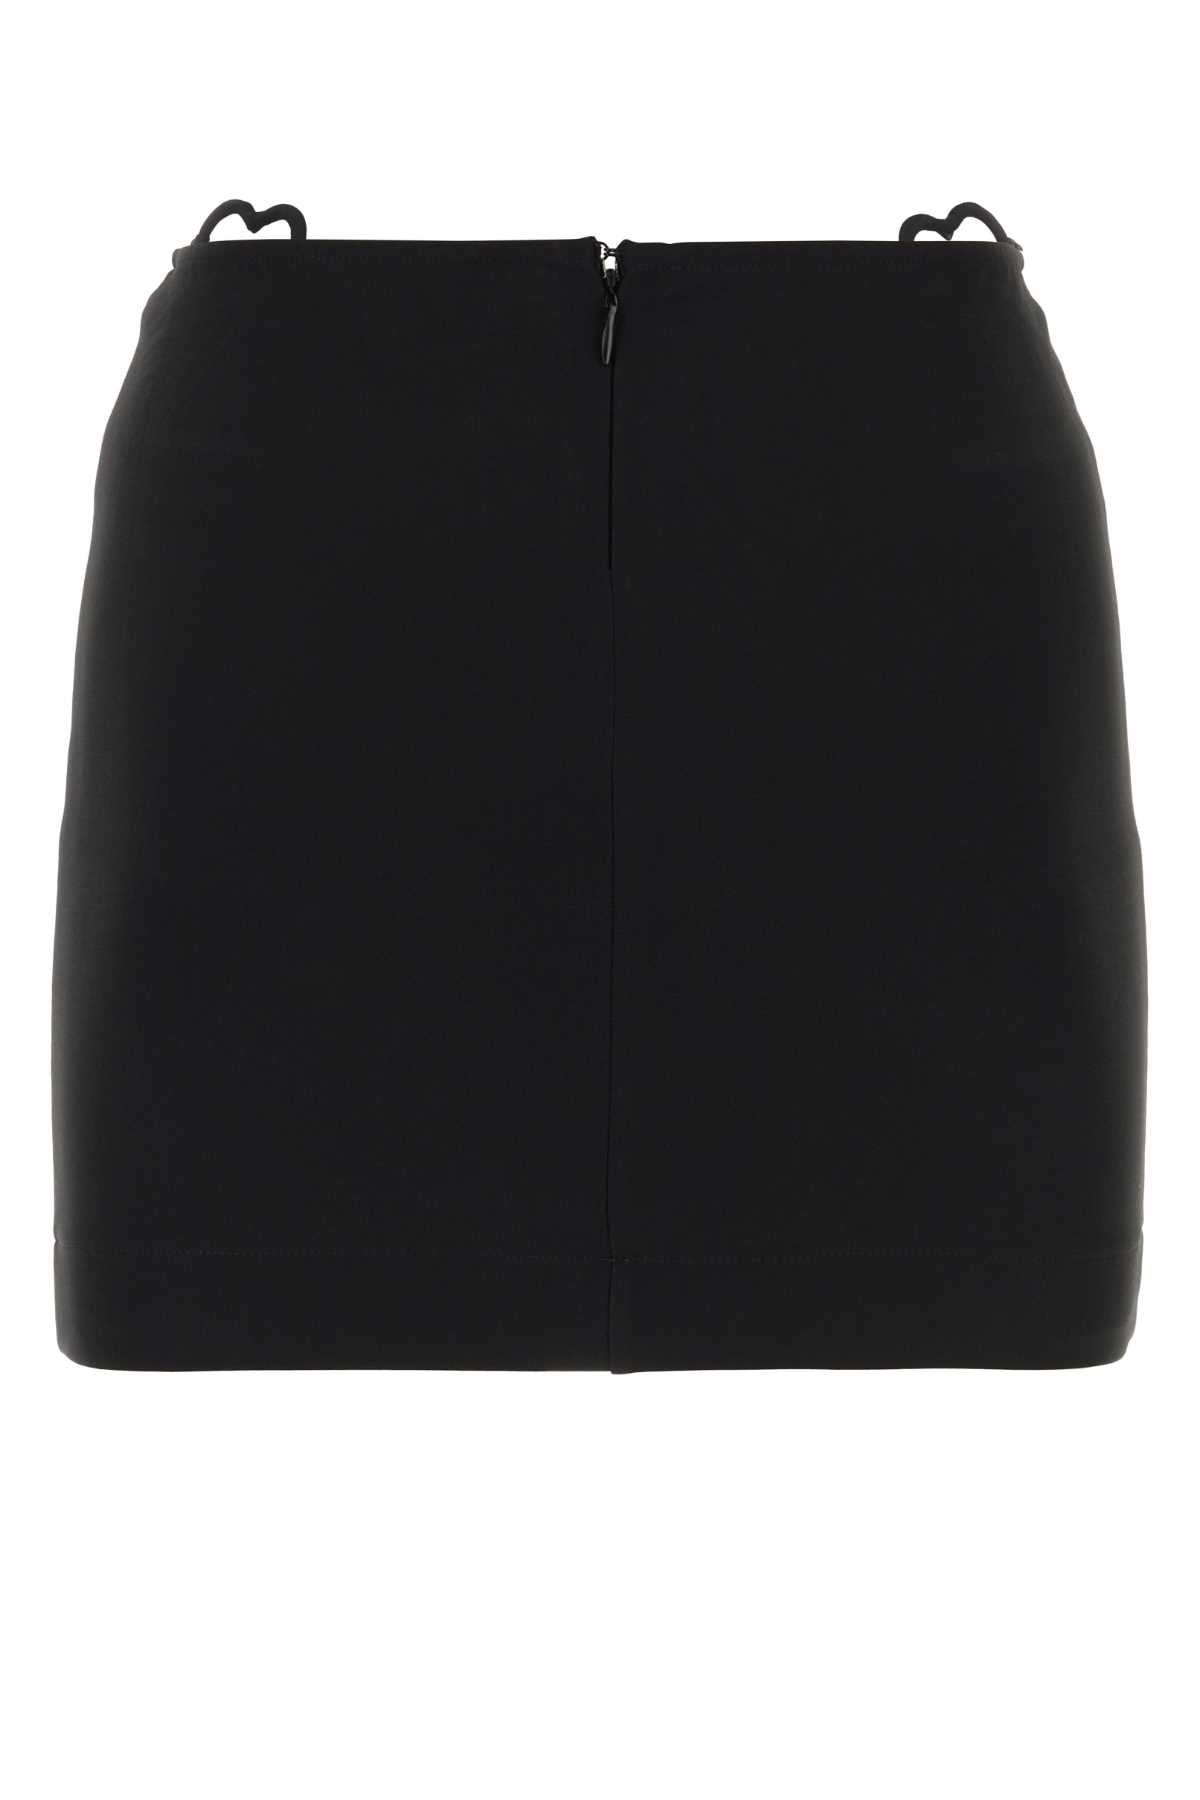 Nensi Dojaka Black Viscose Blend Mini Skirt